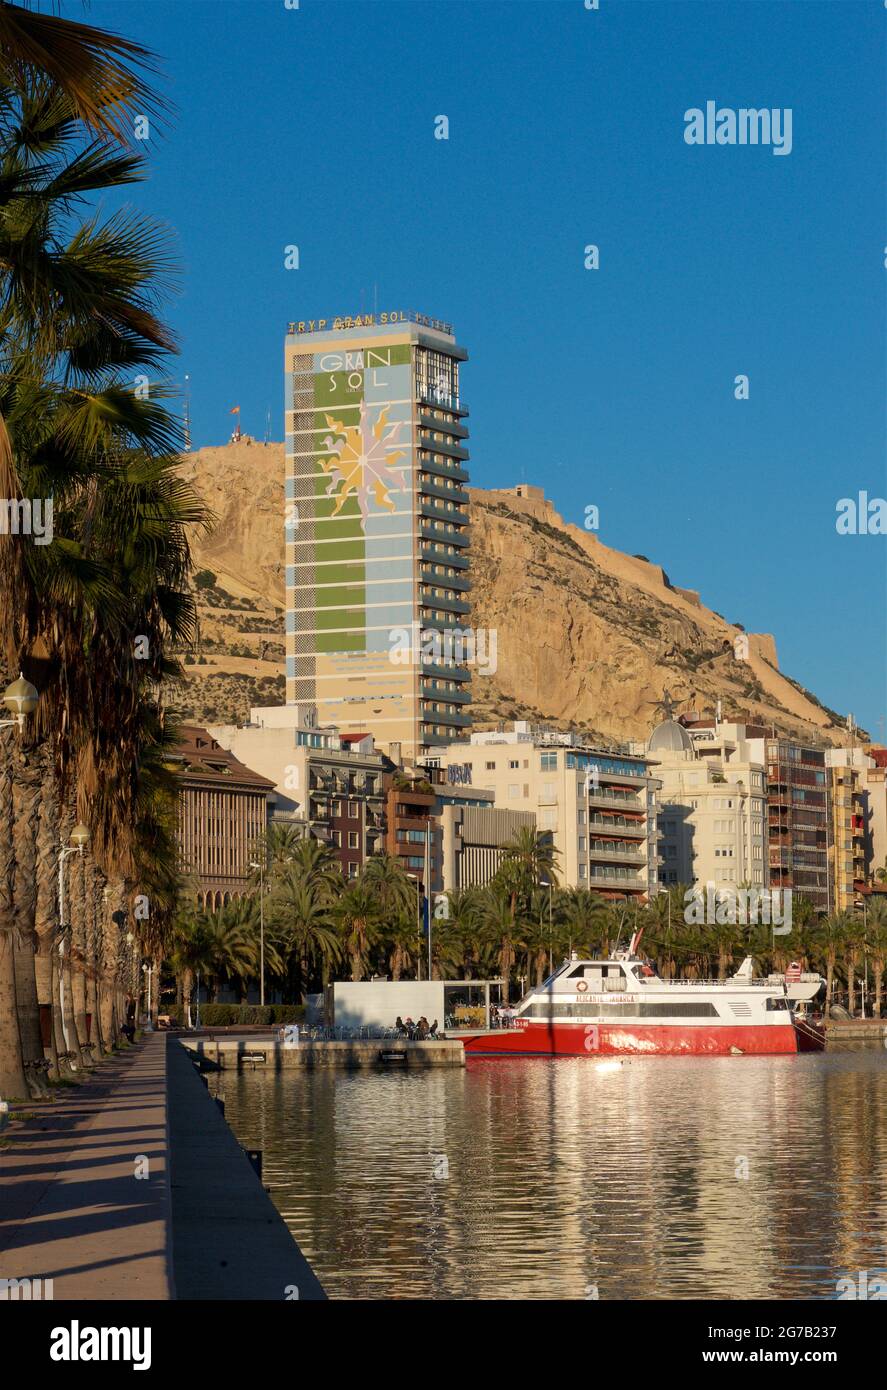 Promenade d'Alicante bordée de palmiers le long de la marina, Alicante, Valence, Espagne. Le bâtiment Gran sol de 97 m de haut au-delà. Aussi connu sous le nom de Hotel Gran sol, Hotel Tryp Gran sol et officiellement Edificio Alonso. Monter Benacantil en arrière-plan Banque D'Images